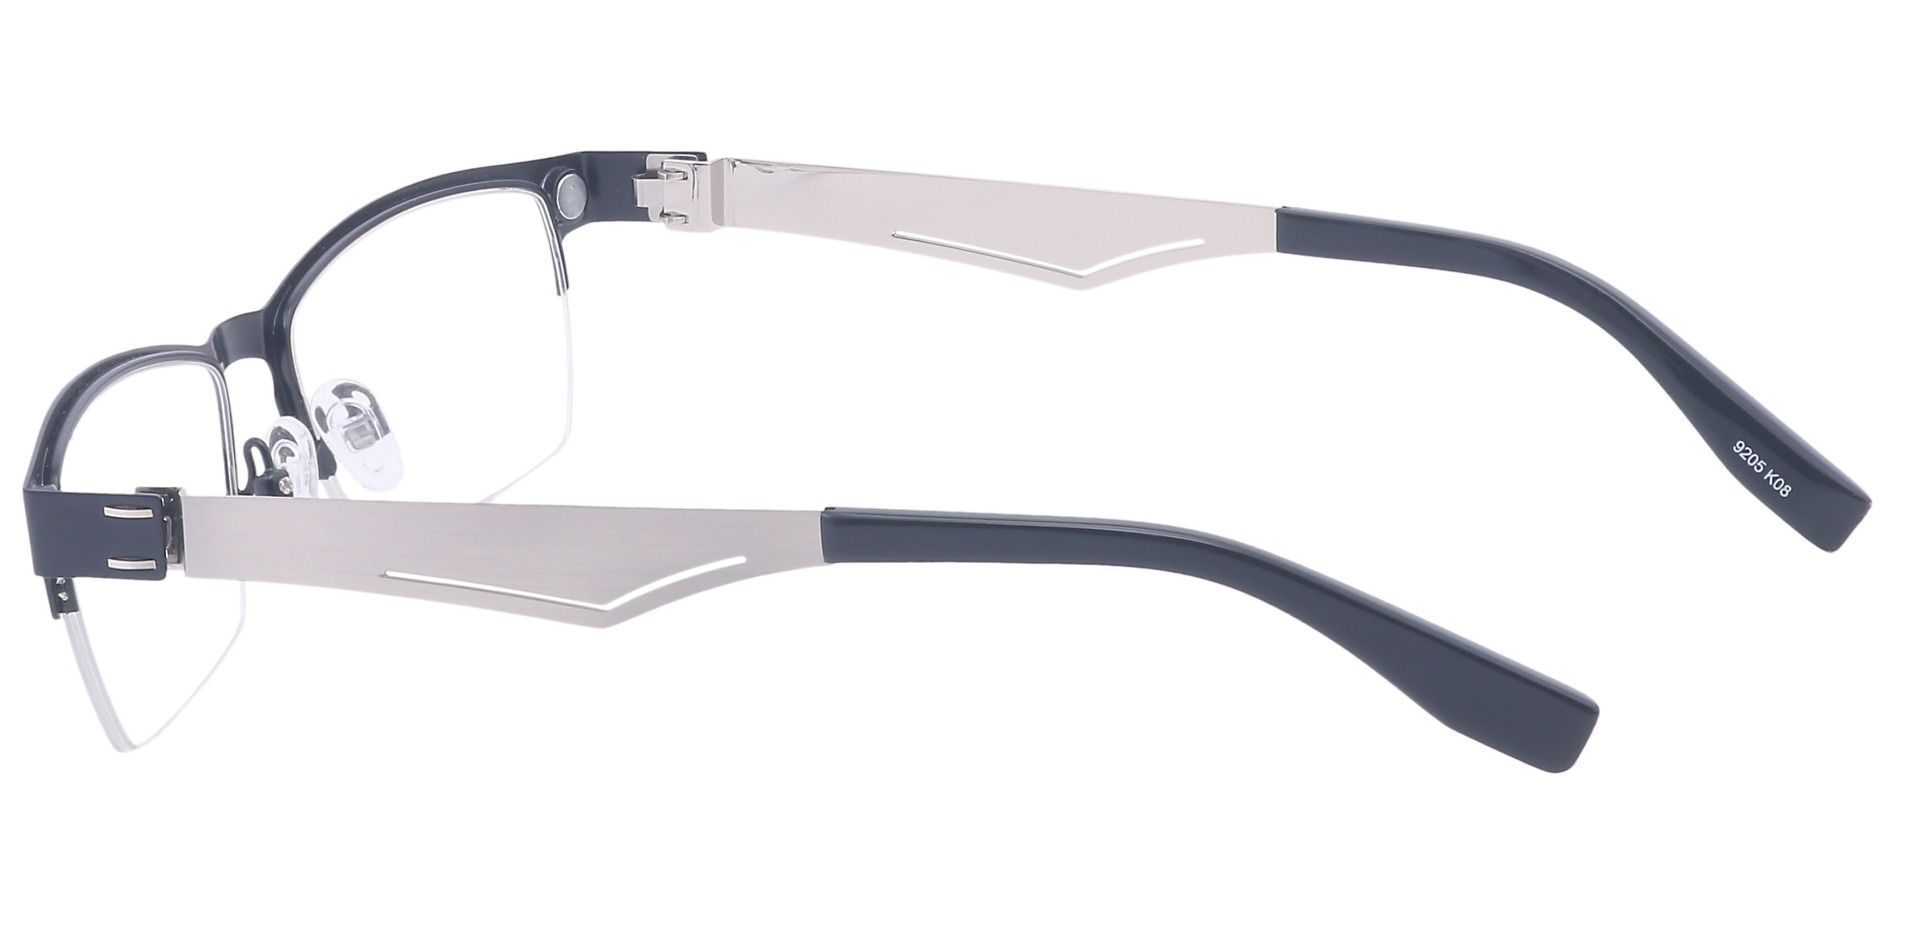 Stefani Rectangle Eyeglasses Frame - Black